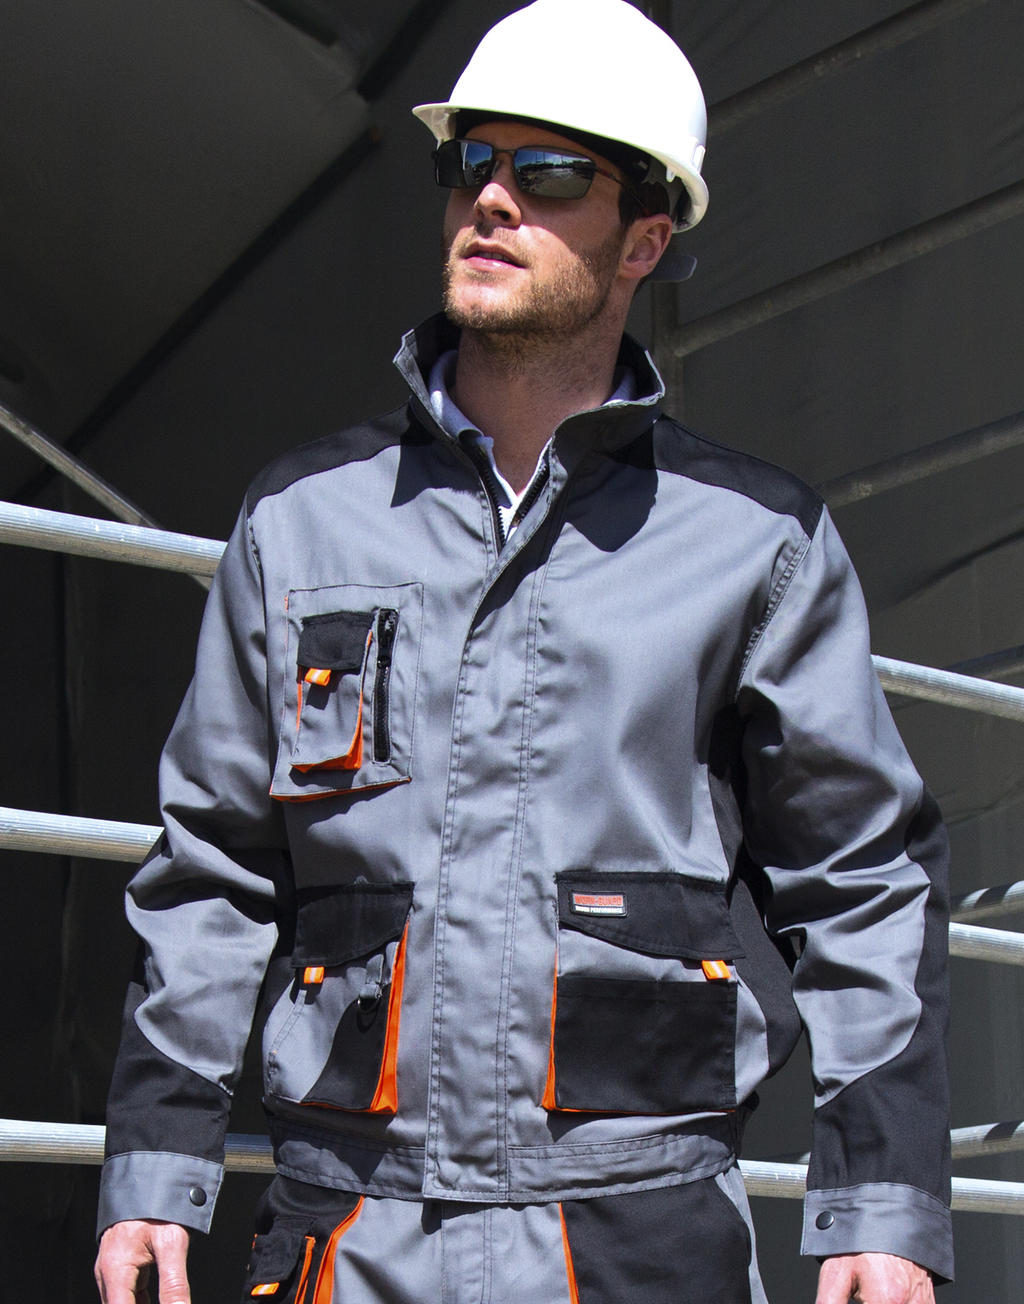  LITE Jacket in Farbe Grey/Black/Orange